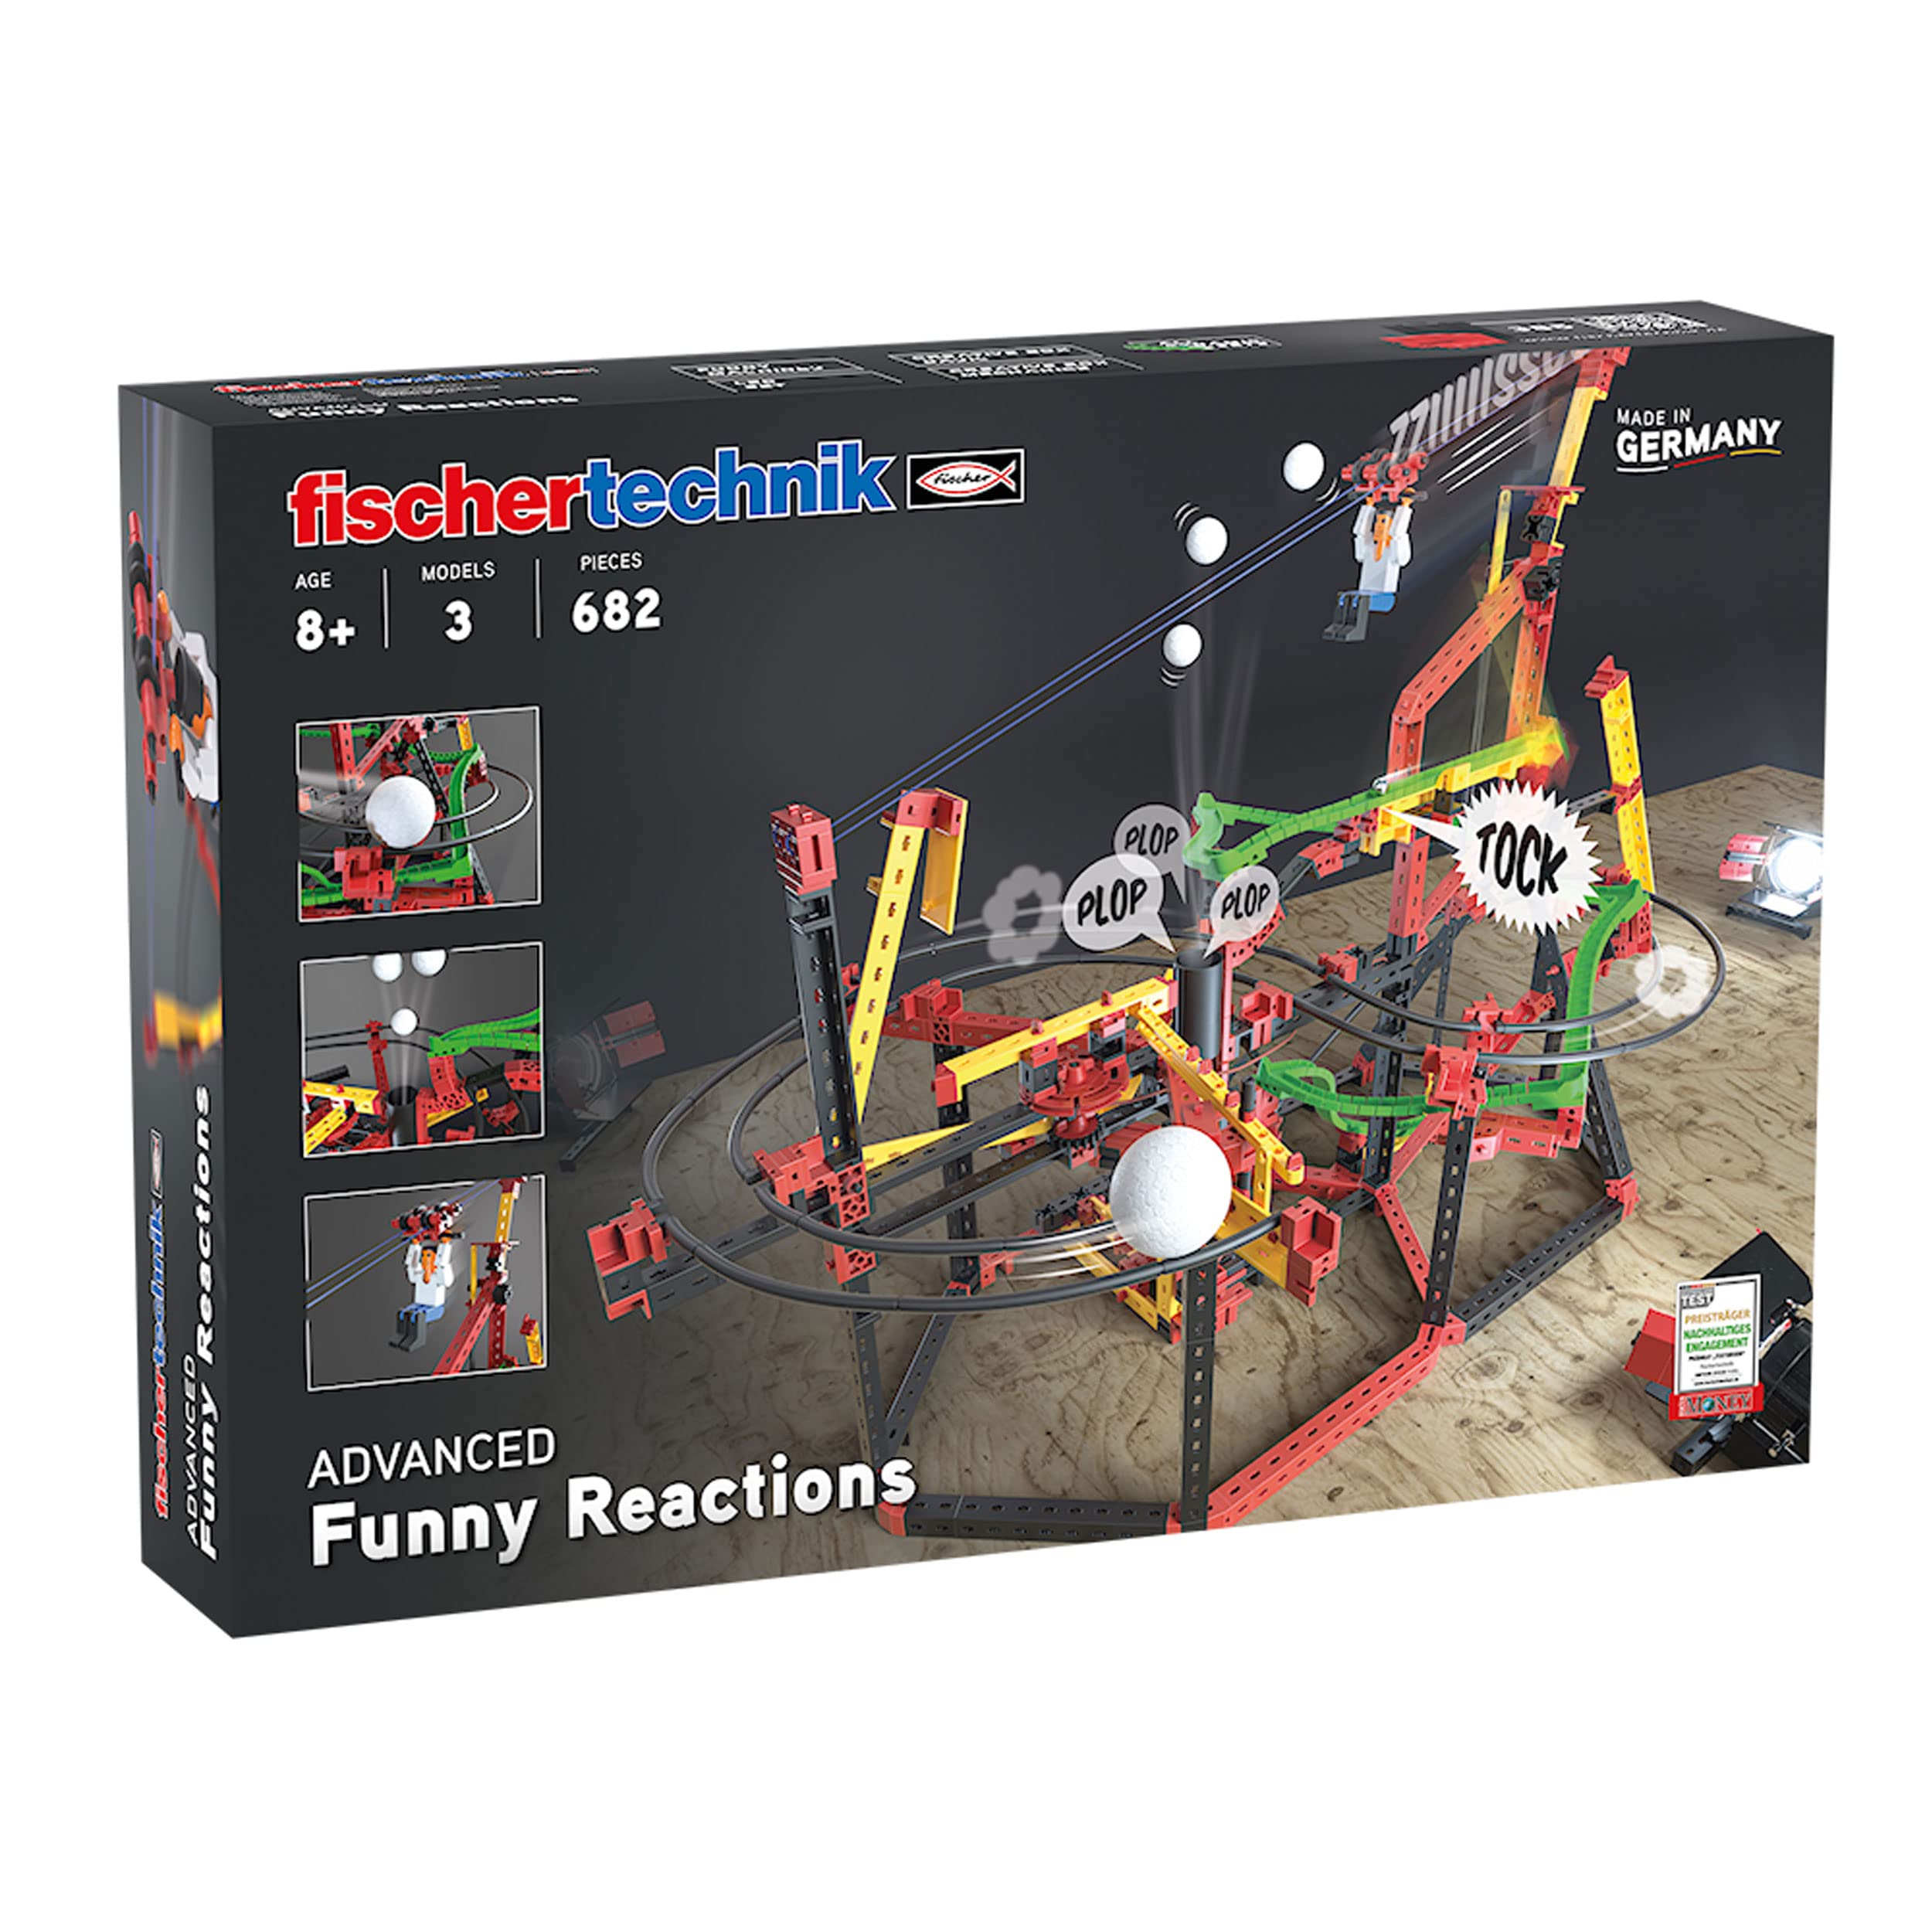 fischertechnik 559890 ADVANCED Funny Reactions – Bausatz für Kinder ab 8 Jahren, Konstruktionsspielzeug mit spannenden Kettenreaktionen, inkl. Seilbahn & Katapult